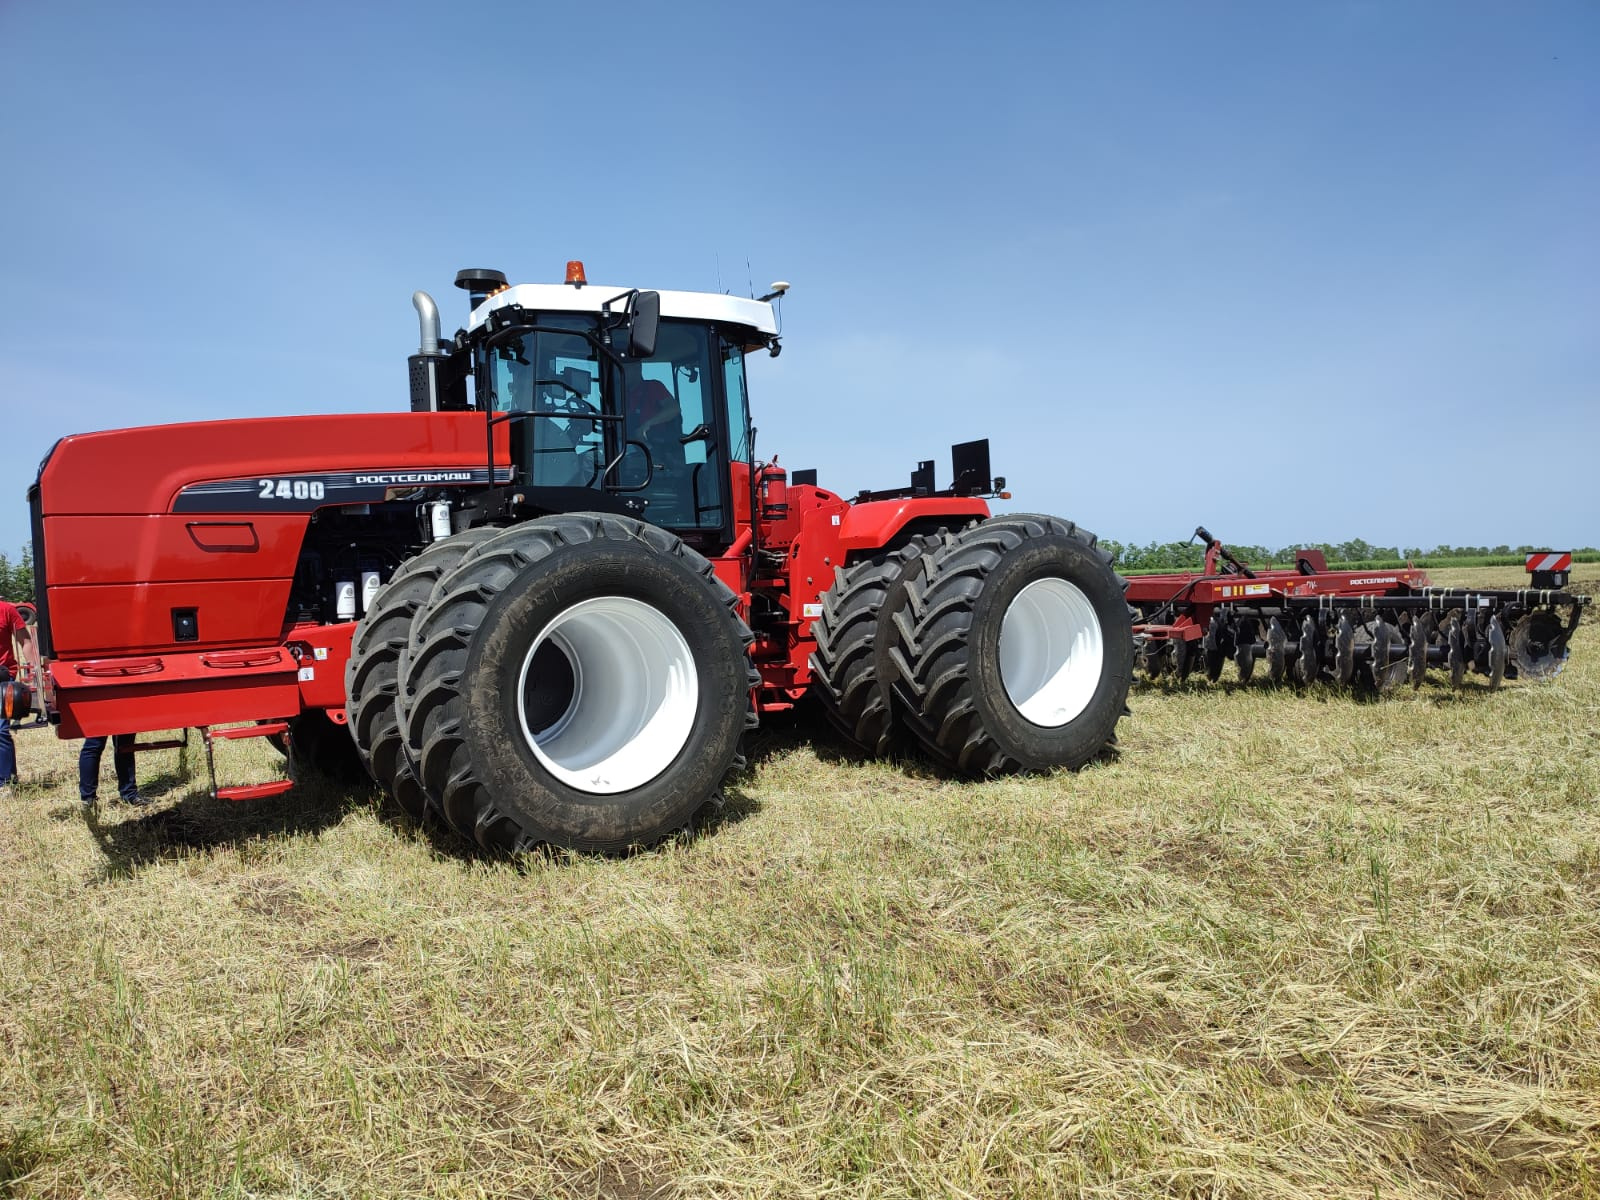 Впервые в стране аграриям презентовали новую версию трактора Ростсельмаш 2400